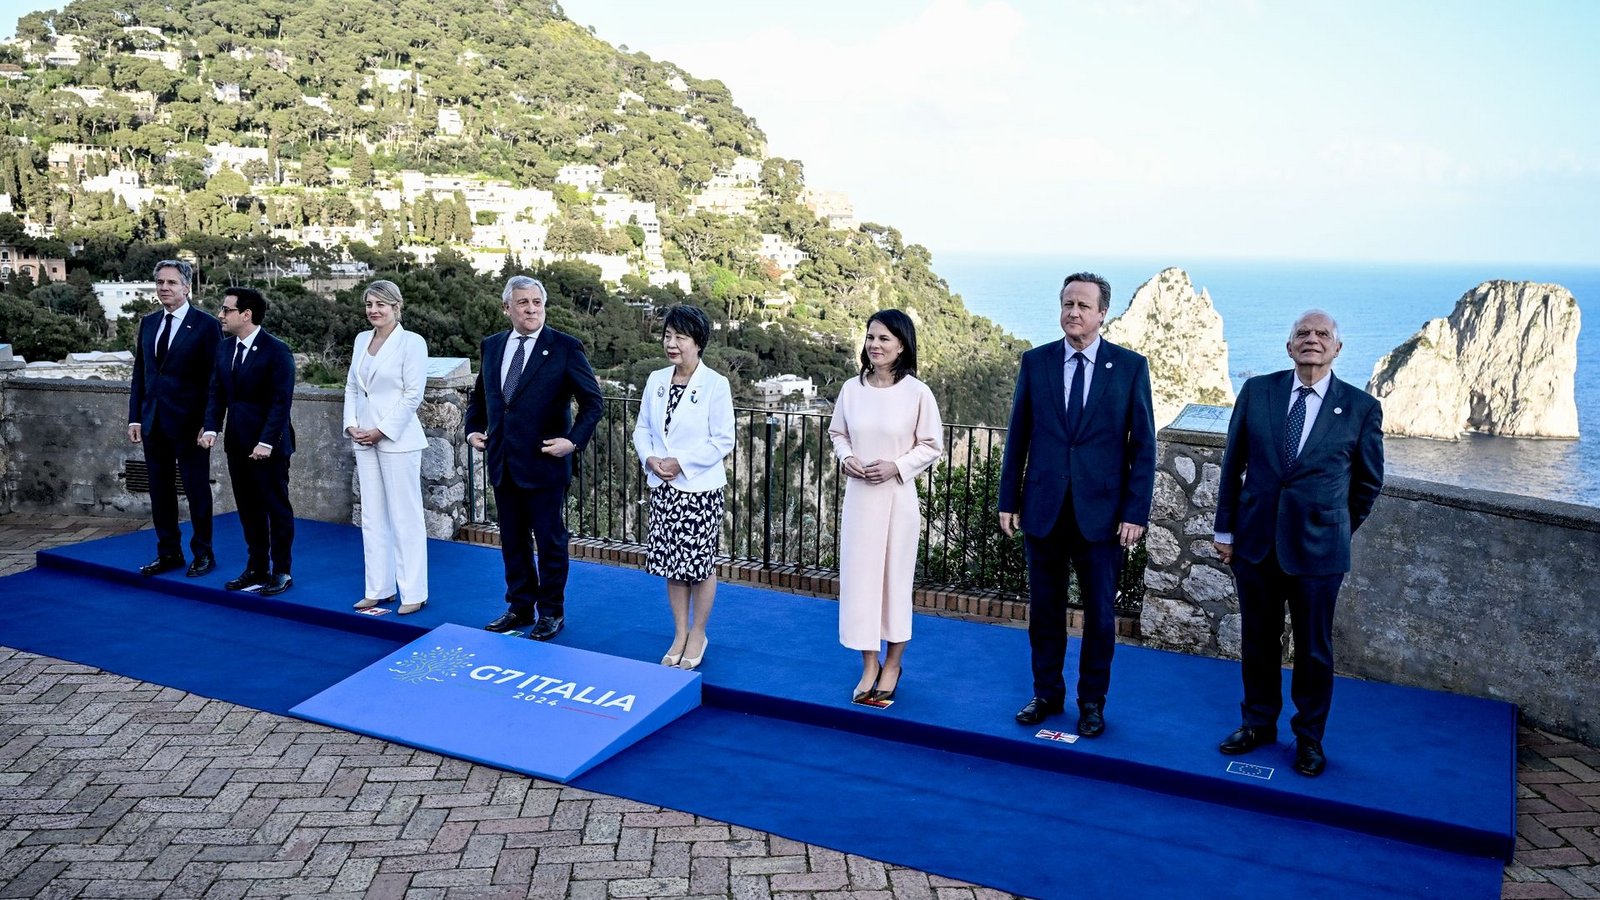 Mit Spannung wird erwartet, was in der Abschlusserklärung der G7 zu den Kriegen in der Ukraine und Nahost gesagt wird.Foto: Britta Pedersen/dpa